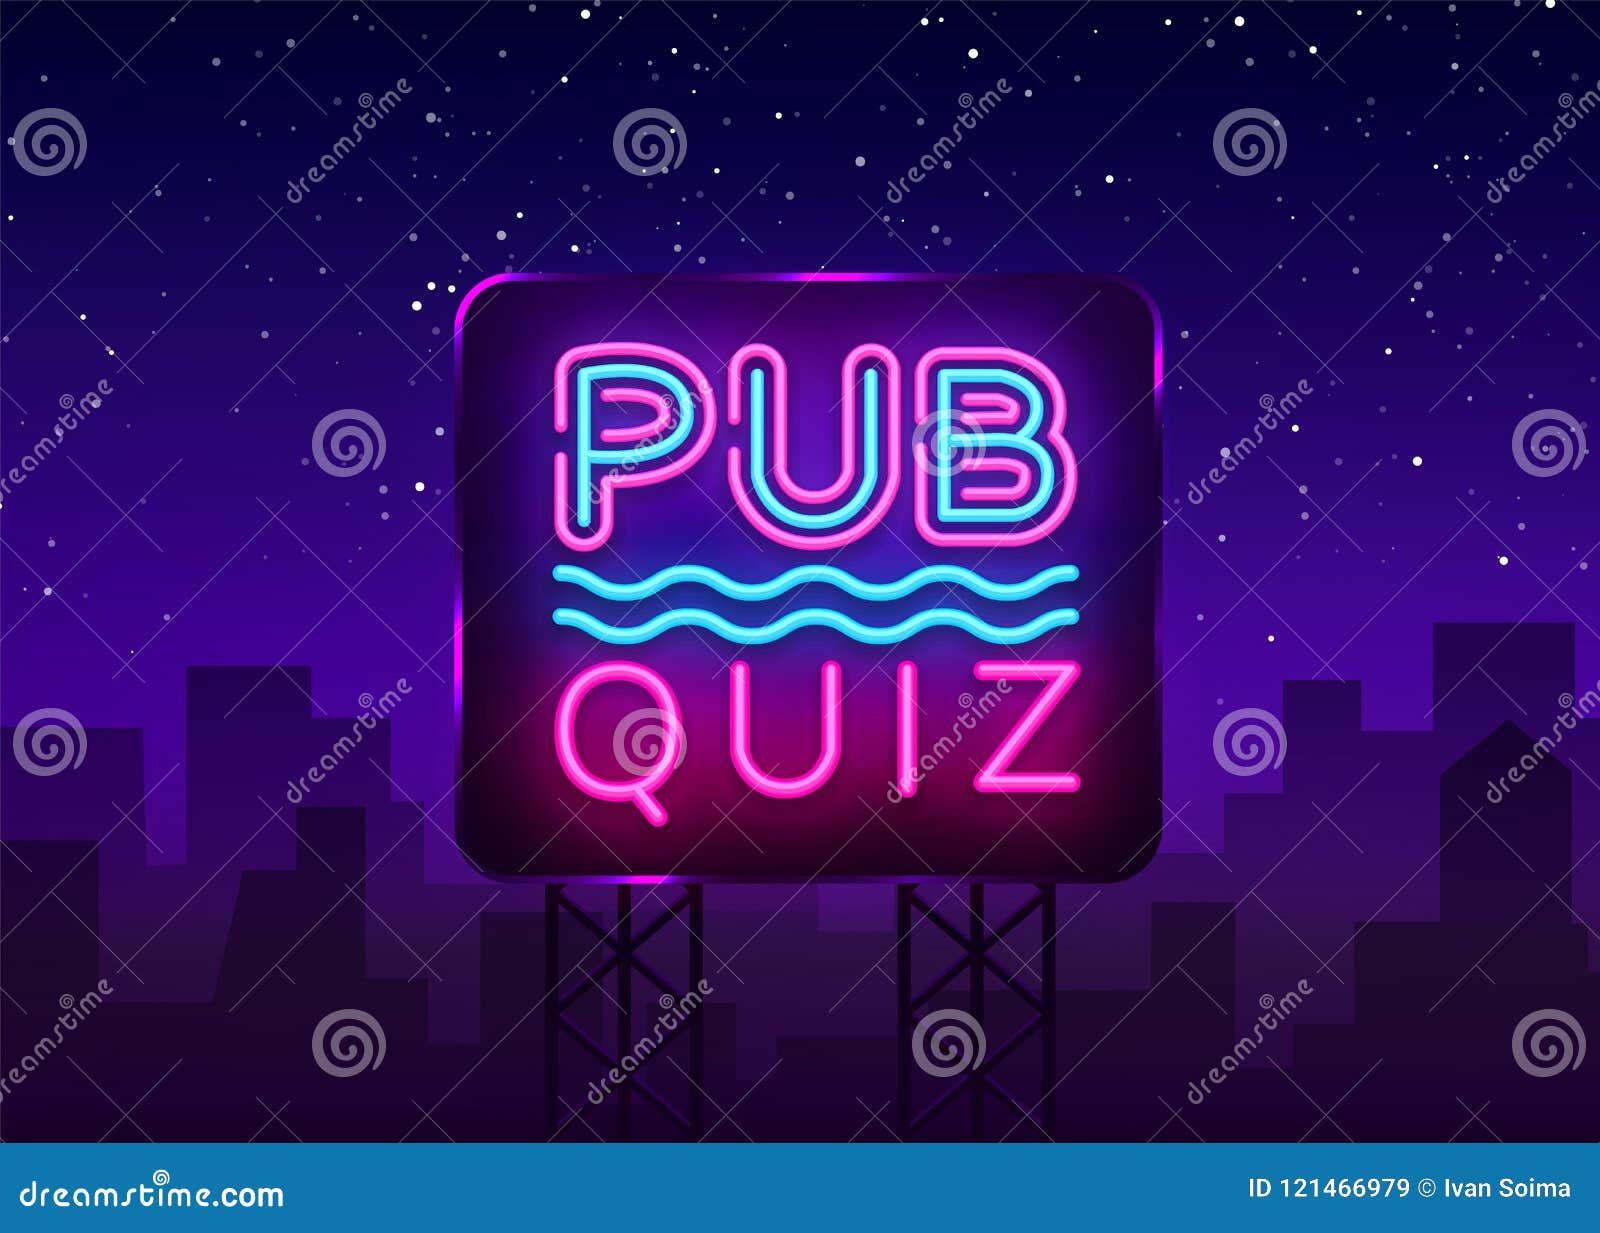 pub quiz night announcement poster   template. quiz night neon signboard, light banner. pub quiz held in pub